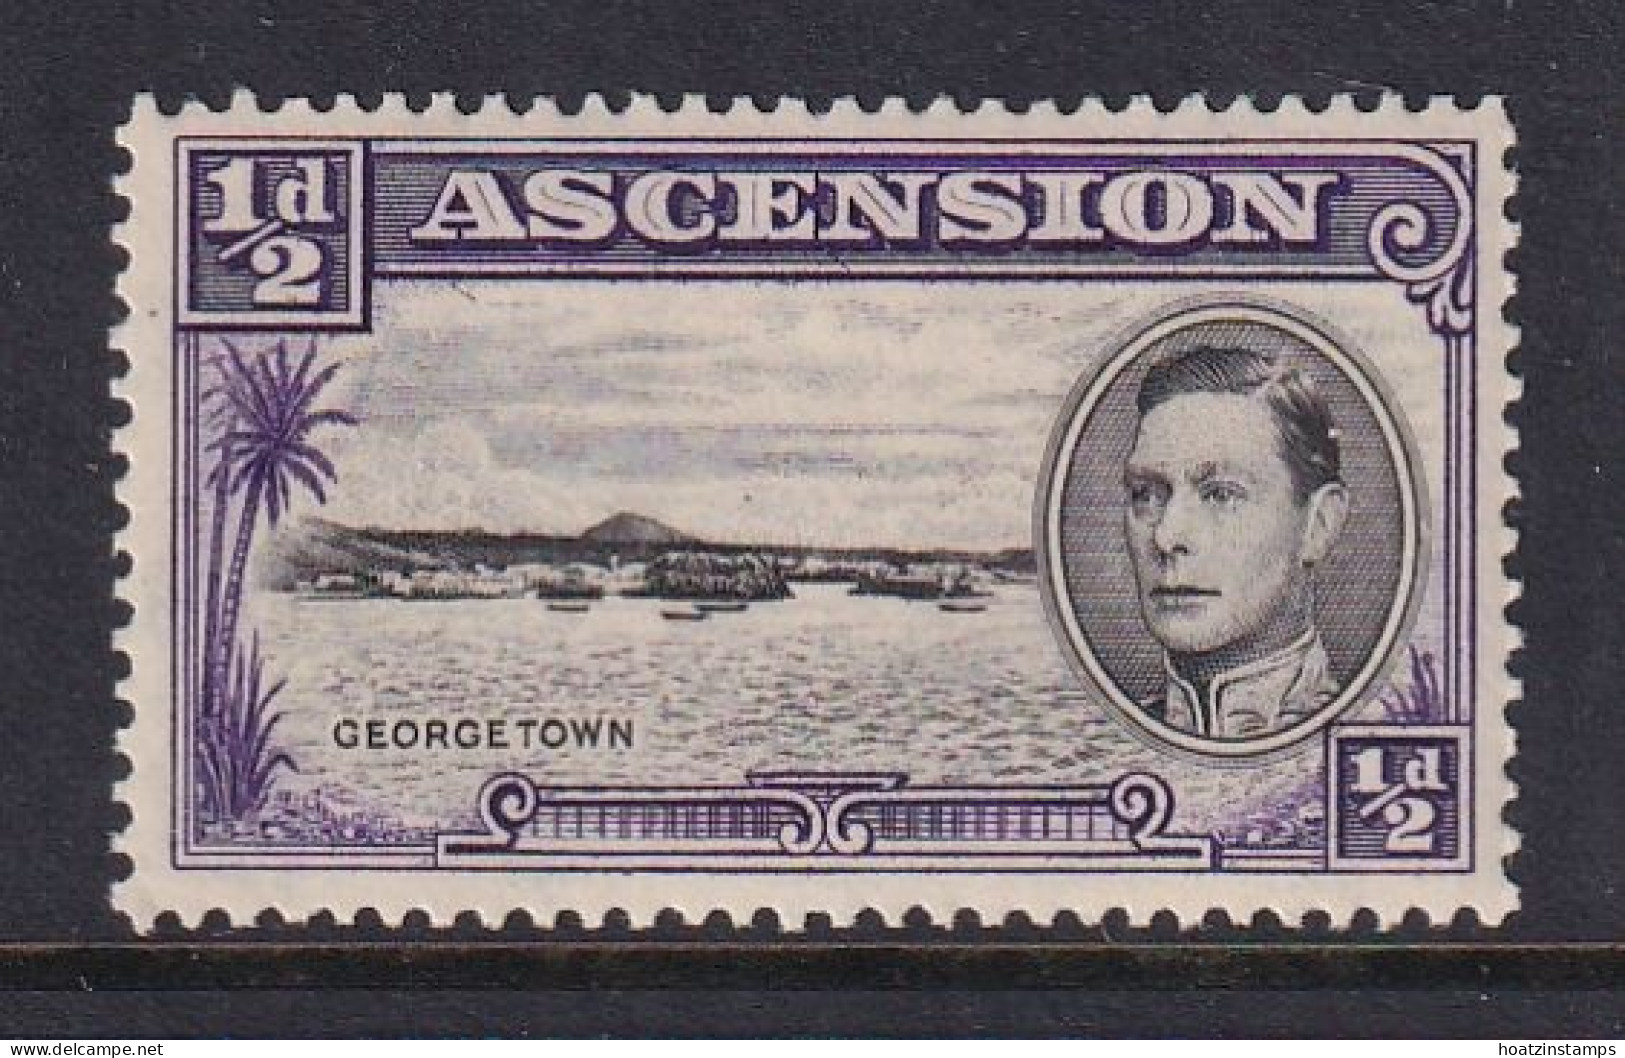 Ascension: 1938/53   KGVI    SG38    ½d  [Perf: 13½]    MH - Ascension (Ile De L')